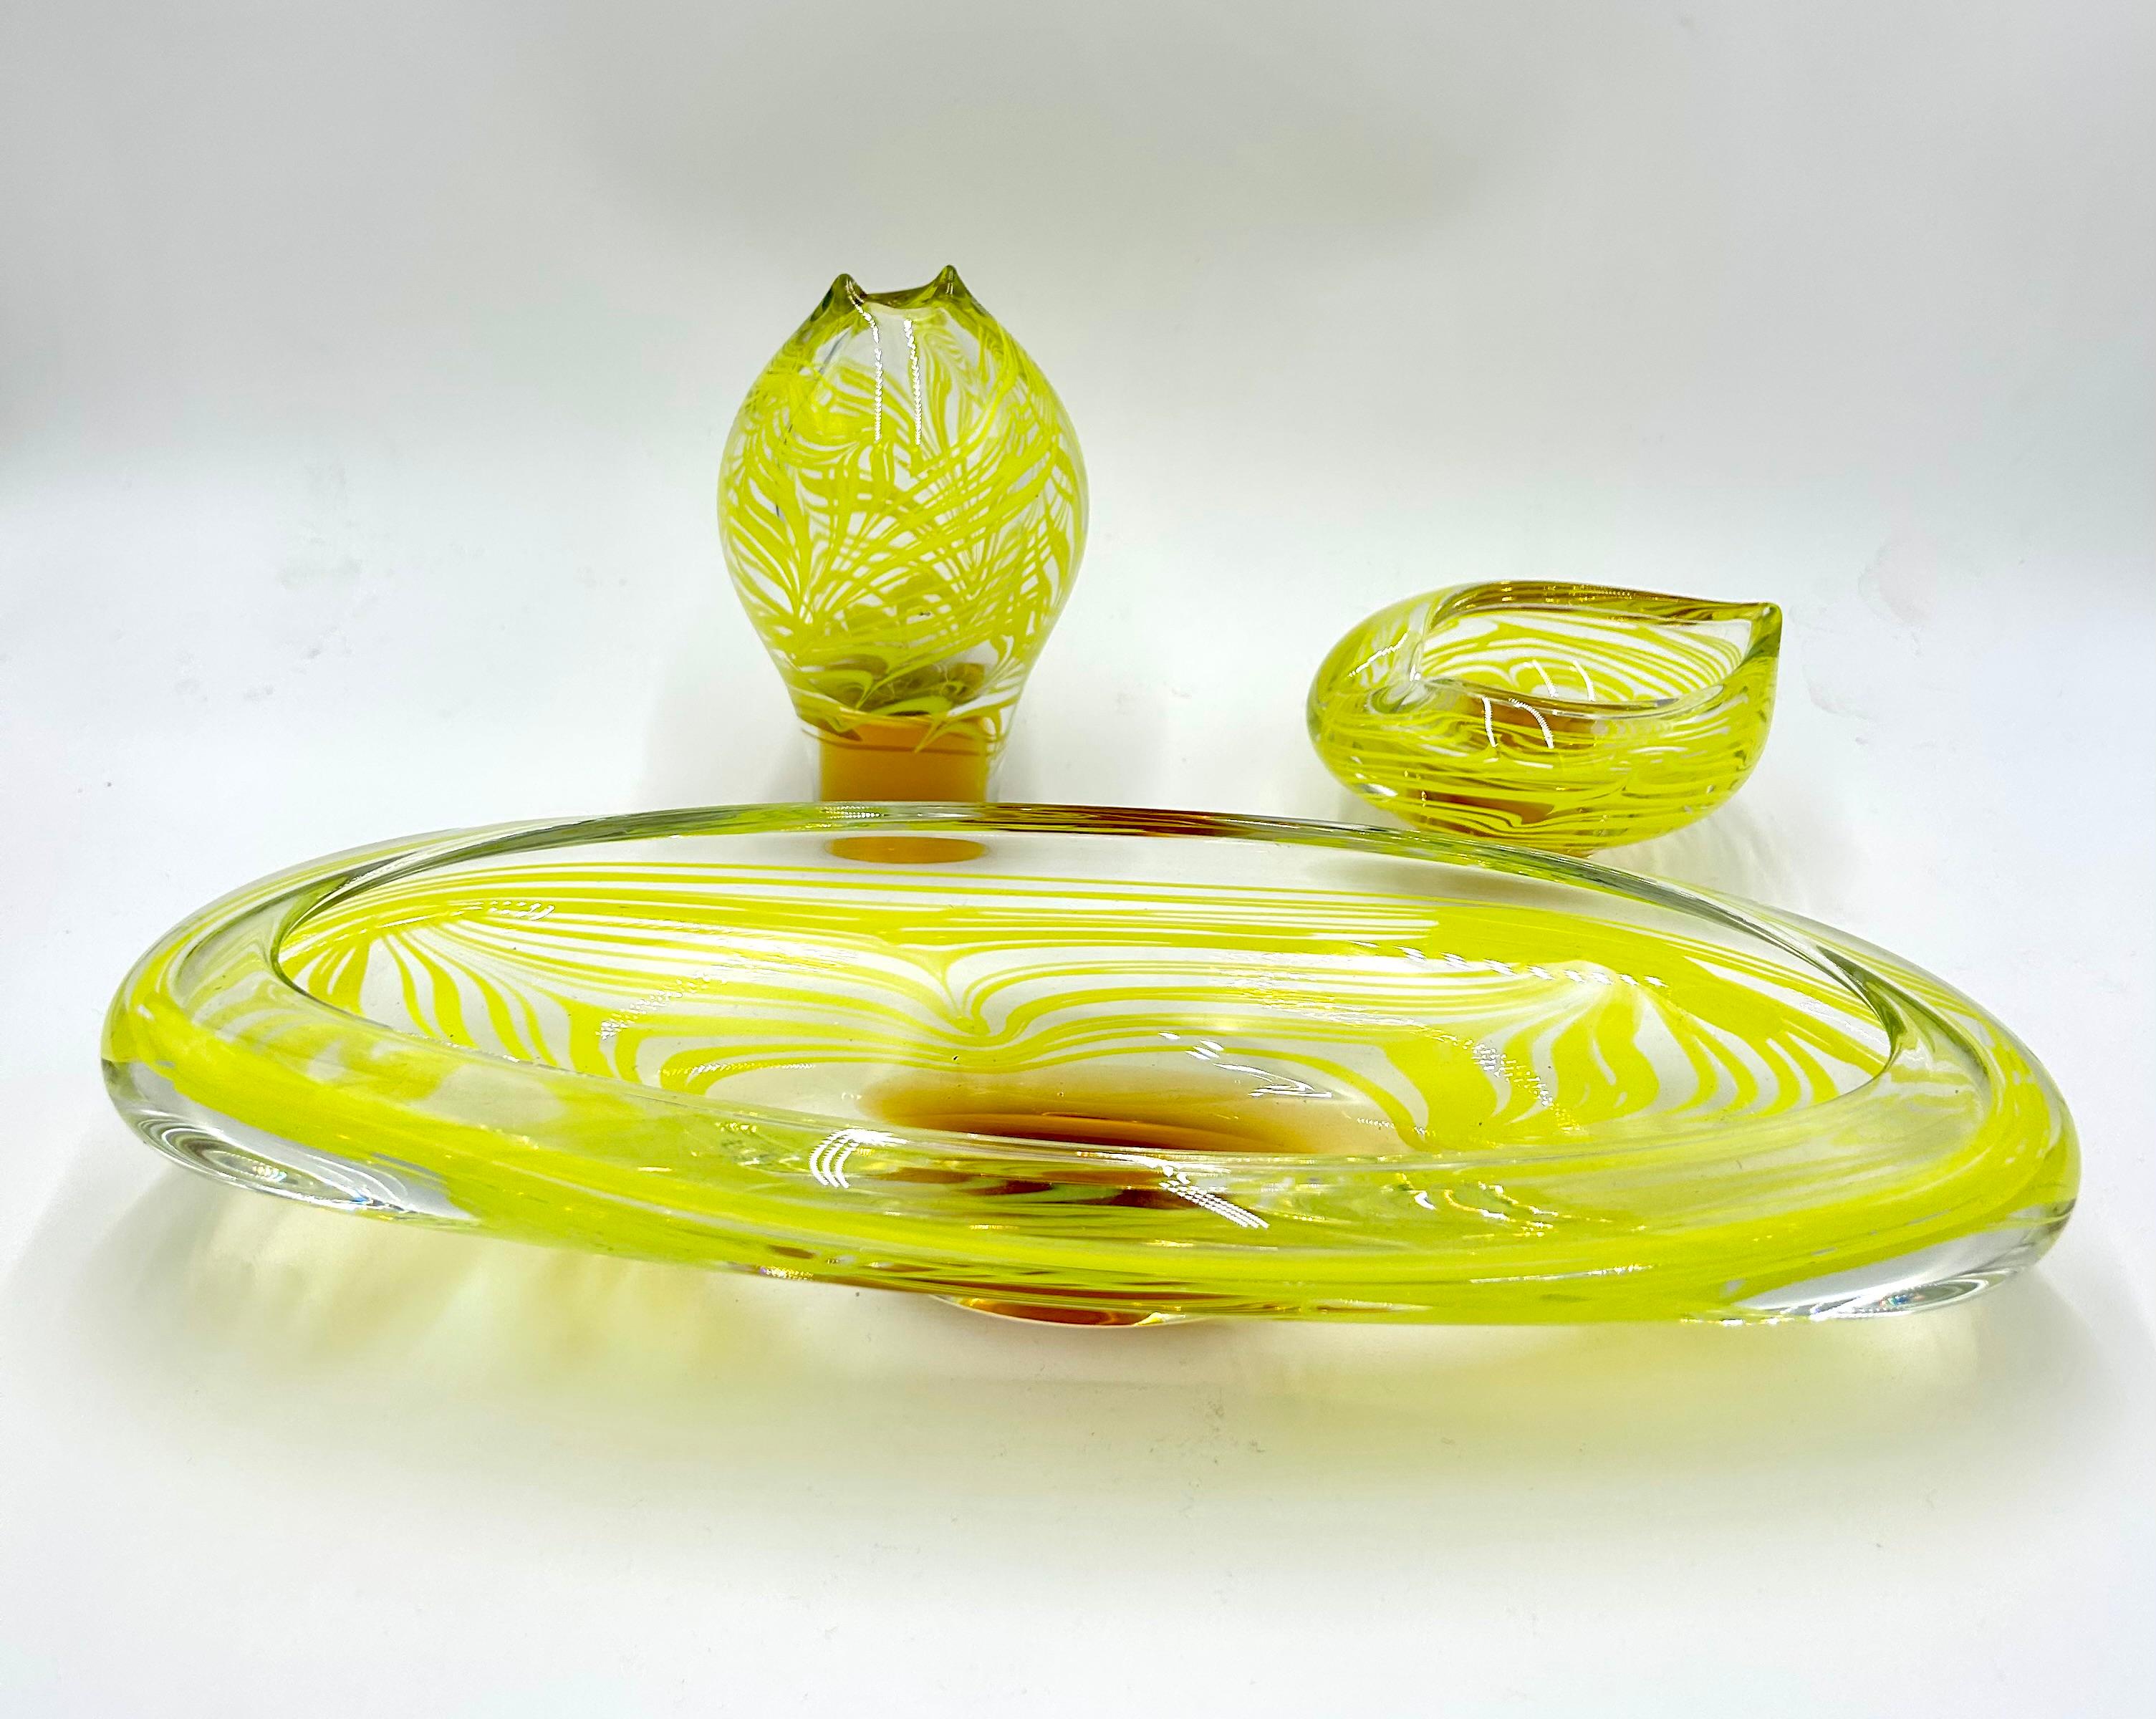 Une pièce unique. Un ensemble rare de verre d'art composé d'un vase, d'un cendrier et d'un plateau conçu par Ivo Rozsypal pour Crystalex.

Verre fabriqué en République tchèque dans les années 1960.

Très bon état, aucun dommage.

vase : hauteur